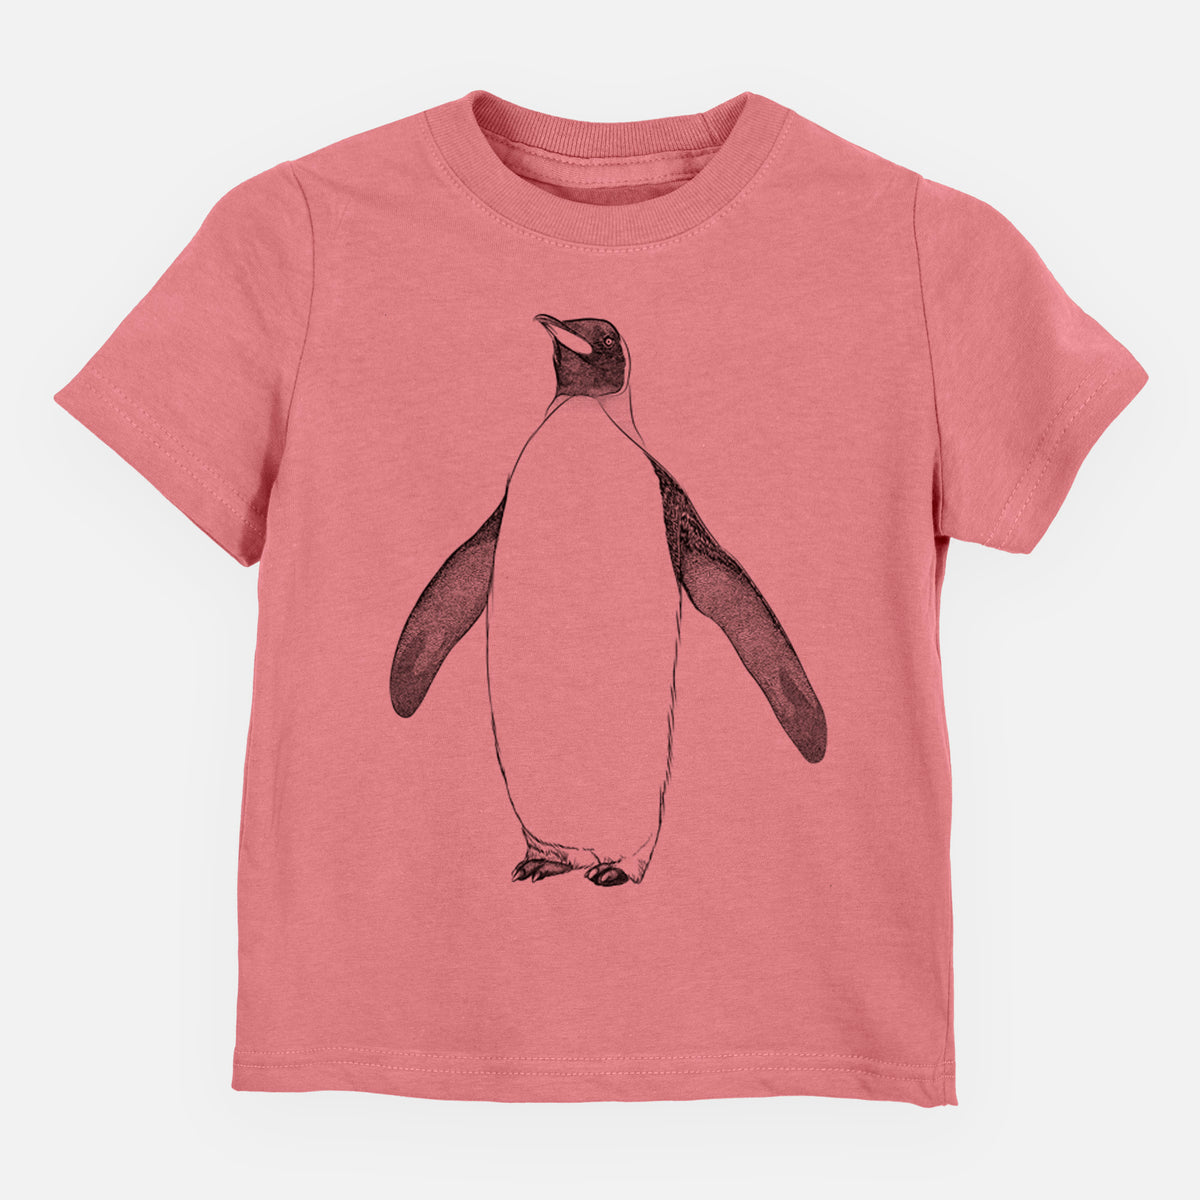 Emperor Penguin - Aptenodytes forsteri - Kids Shirt